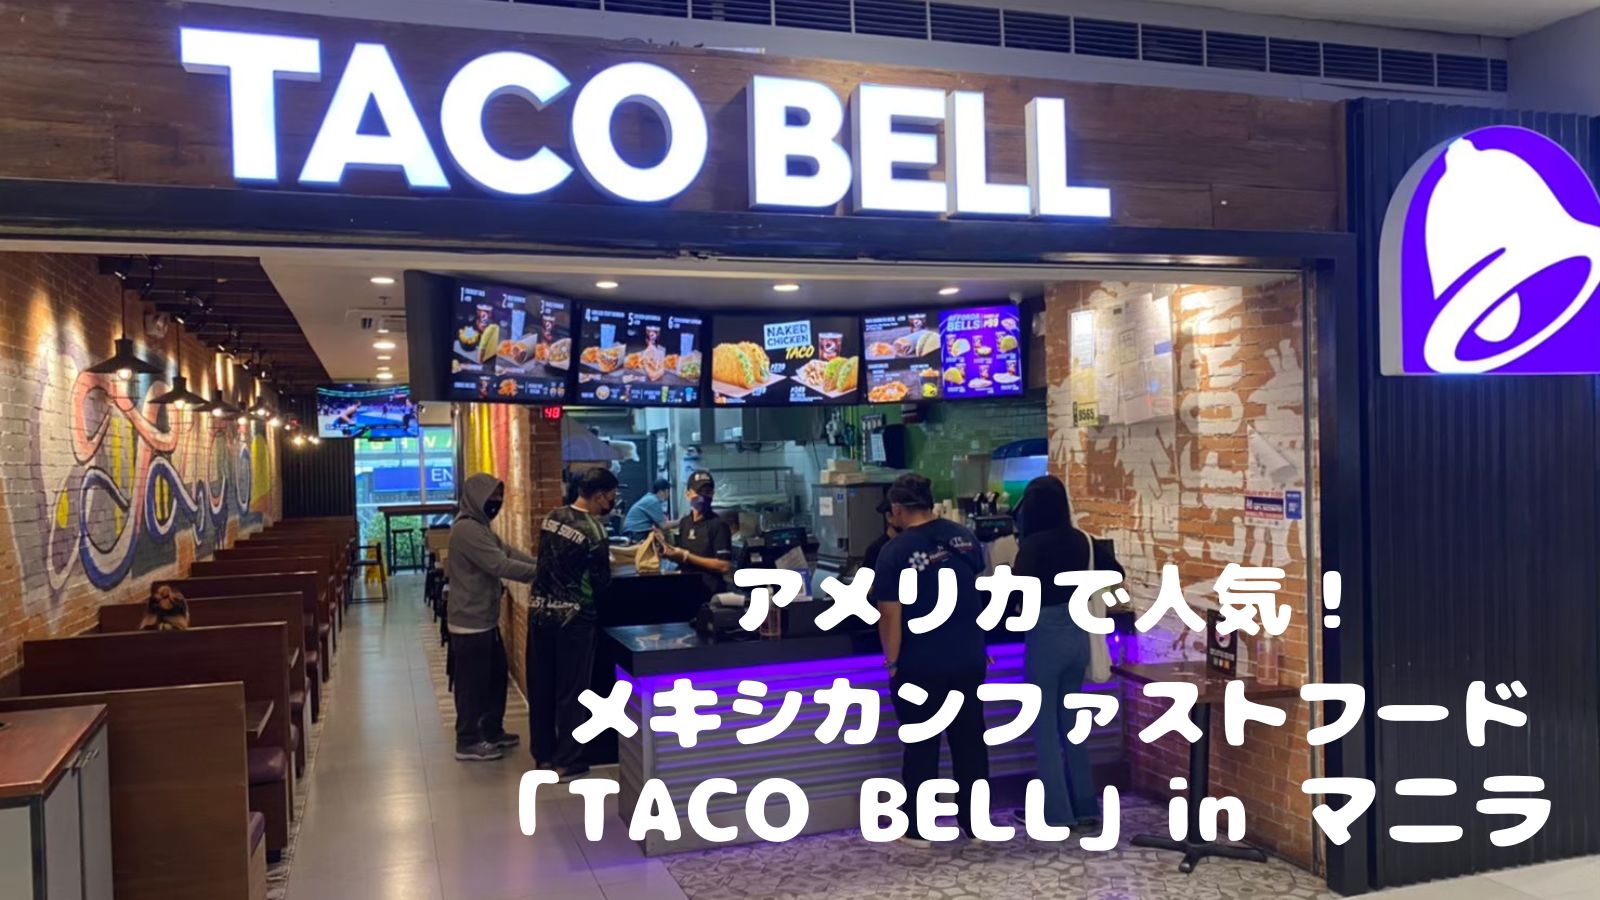 アメリカで人気のメキシカンファストフード「TACO BELL」をマニラで